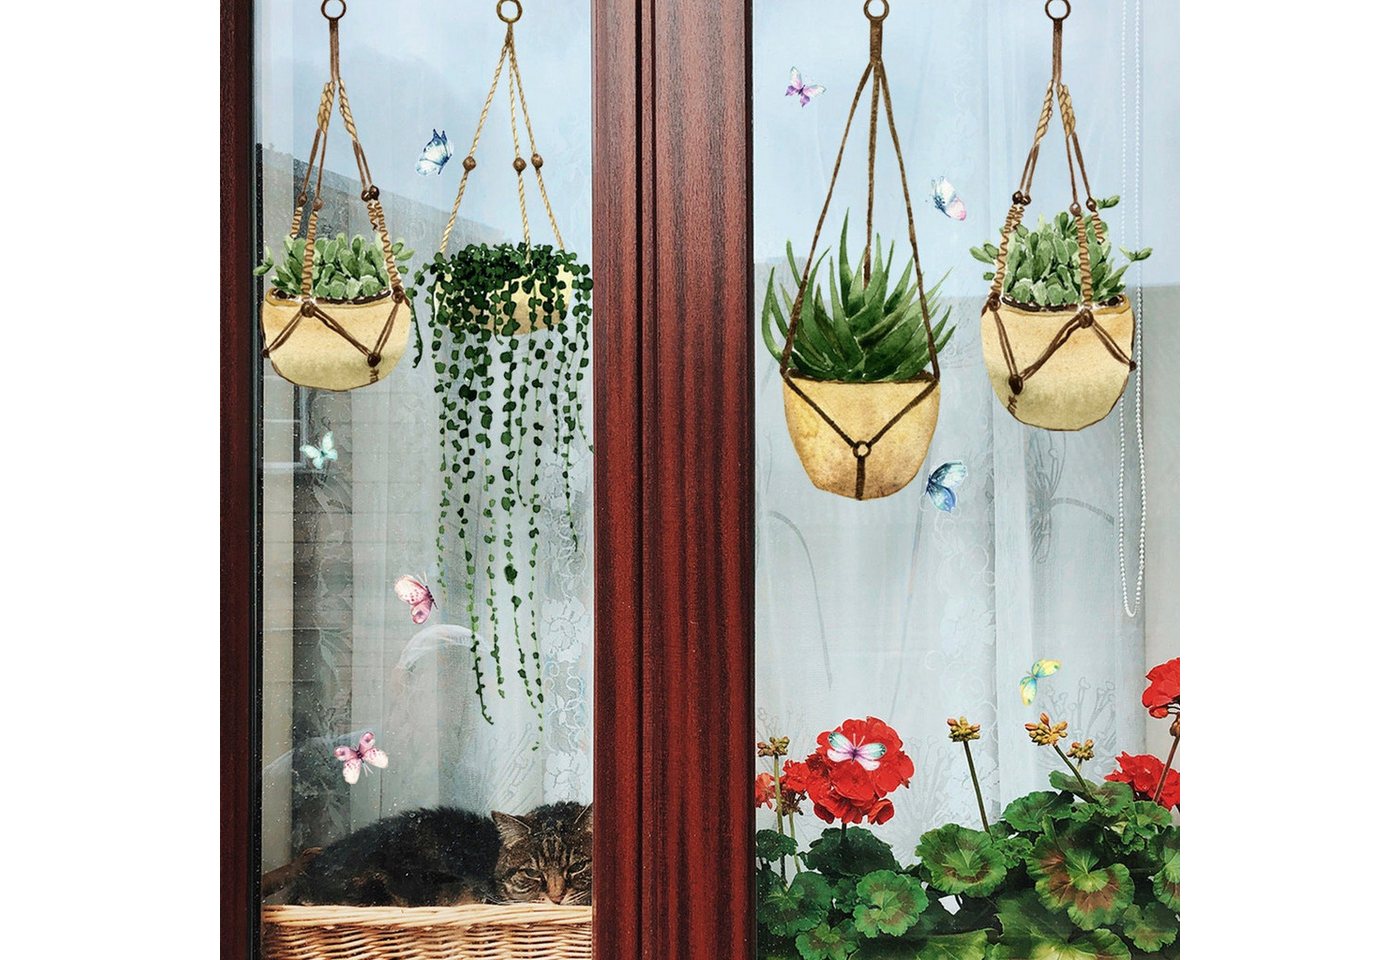 AUKUU Wandtattoo 23*54cm Grüne Pflanze im Topf Schmetterling, Wandaufkleber elektrostatischer Aufkleber Glasaufkleber Fenster von AUKUU